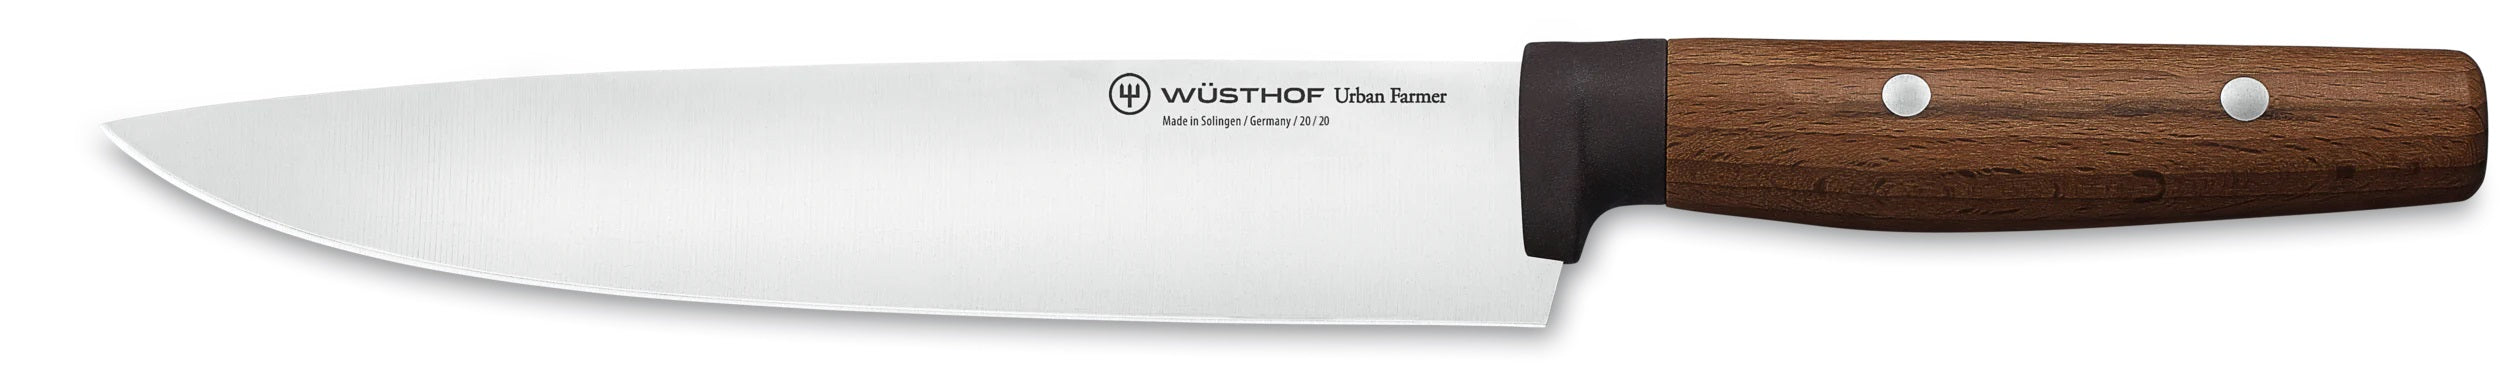 Wusthof Urban Farmer 8" Chef's Knife 1025244820